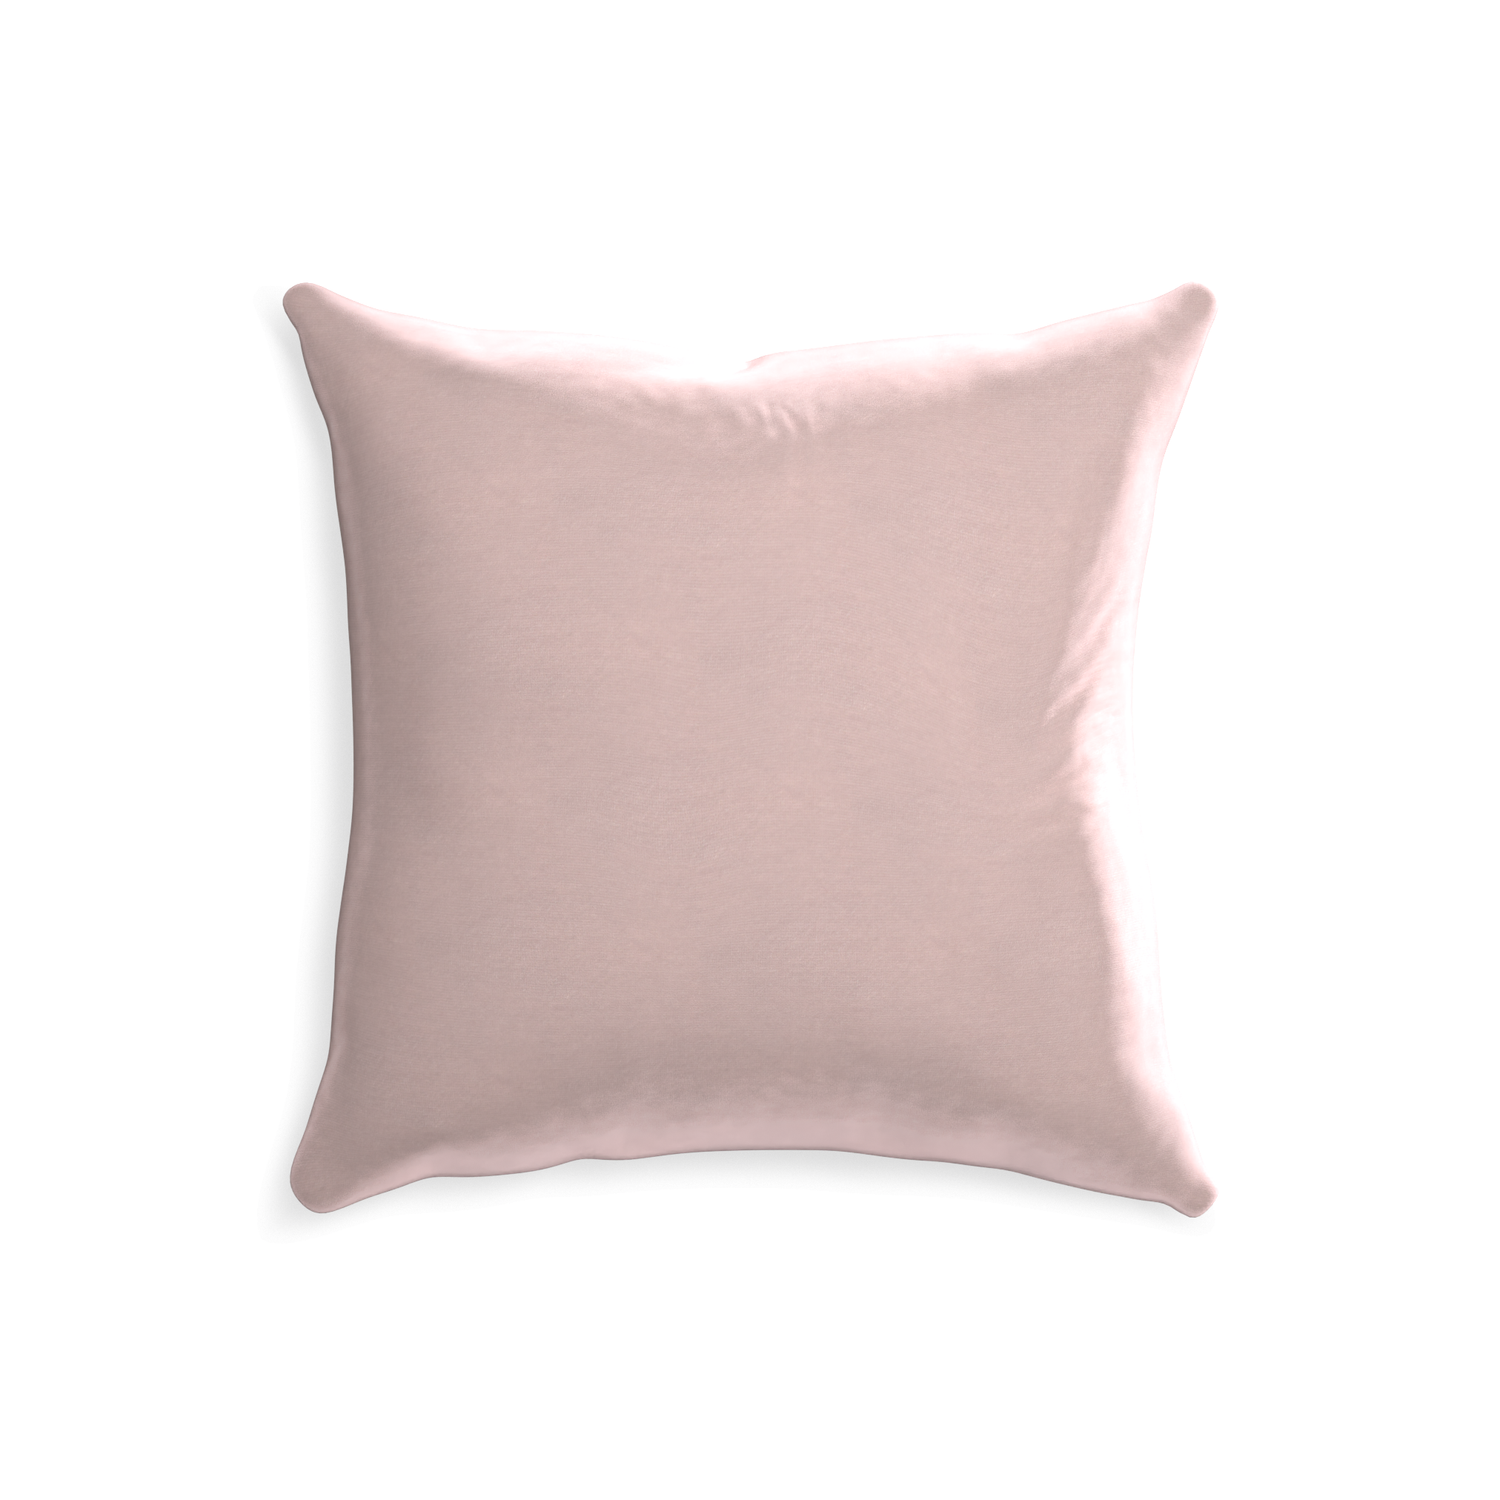 20-square rose velvet custom pillow with none on white background